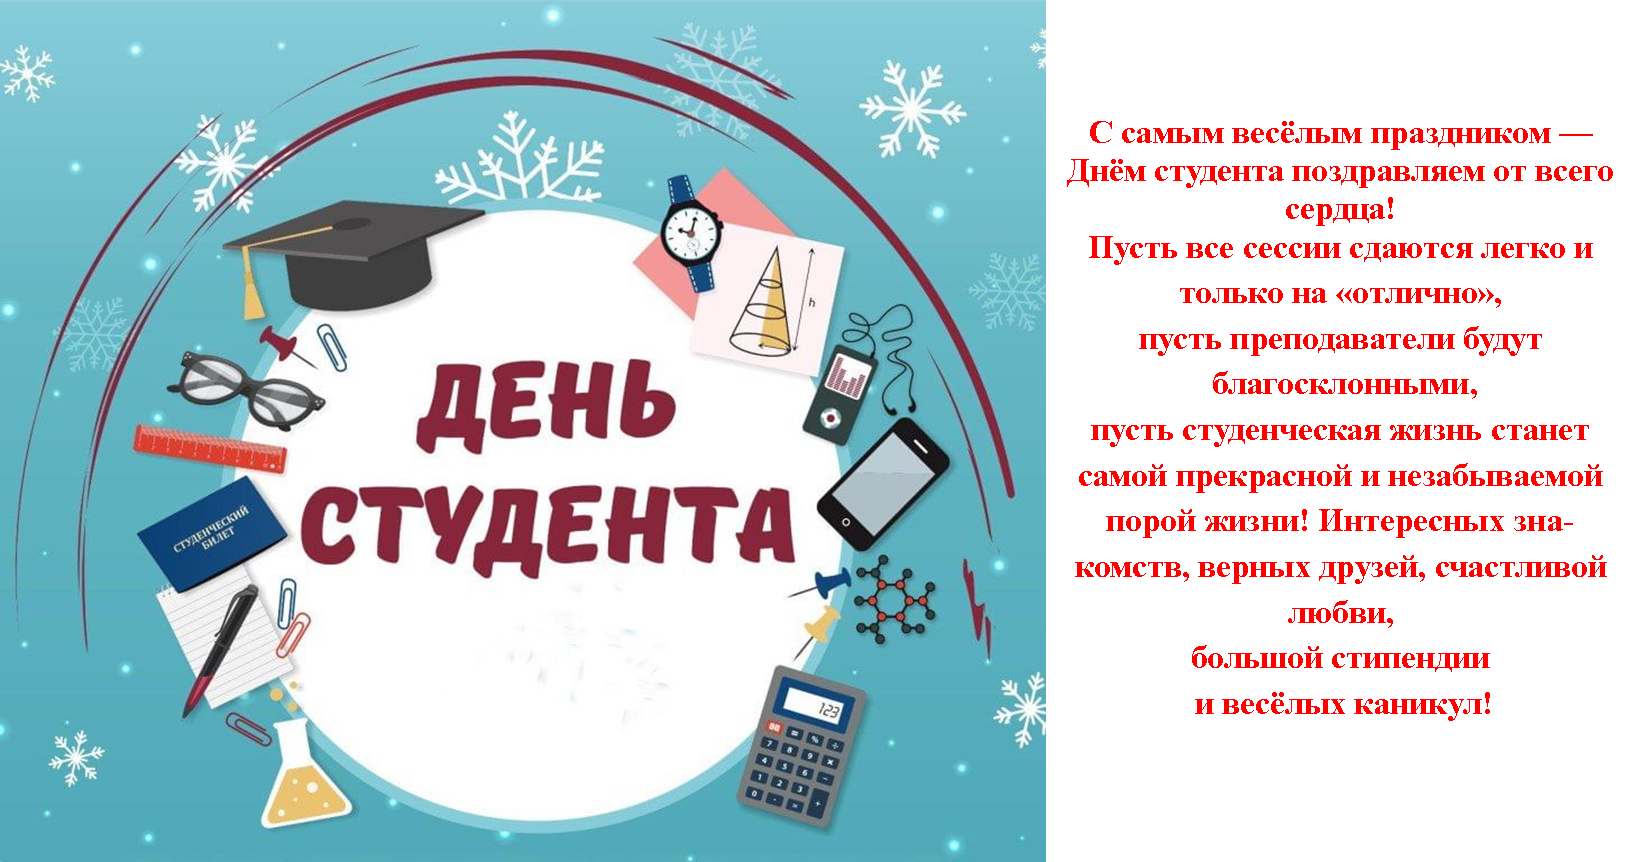 Когда отмечают день студента в россии: 17 ноября или 25 января